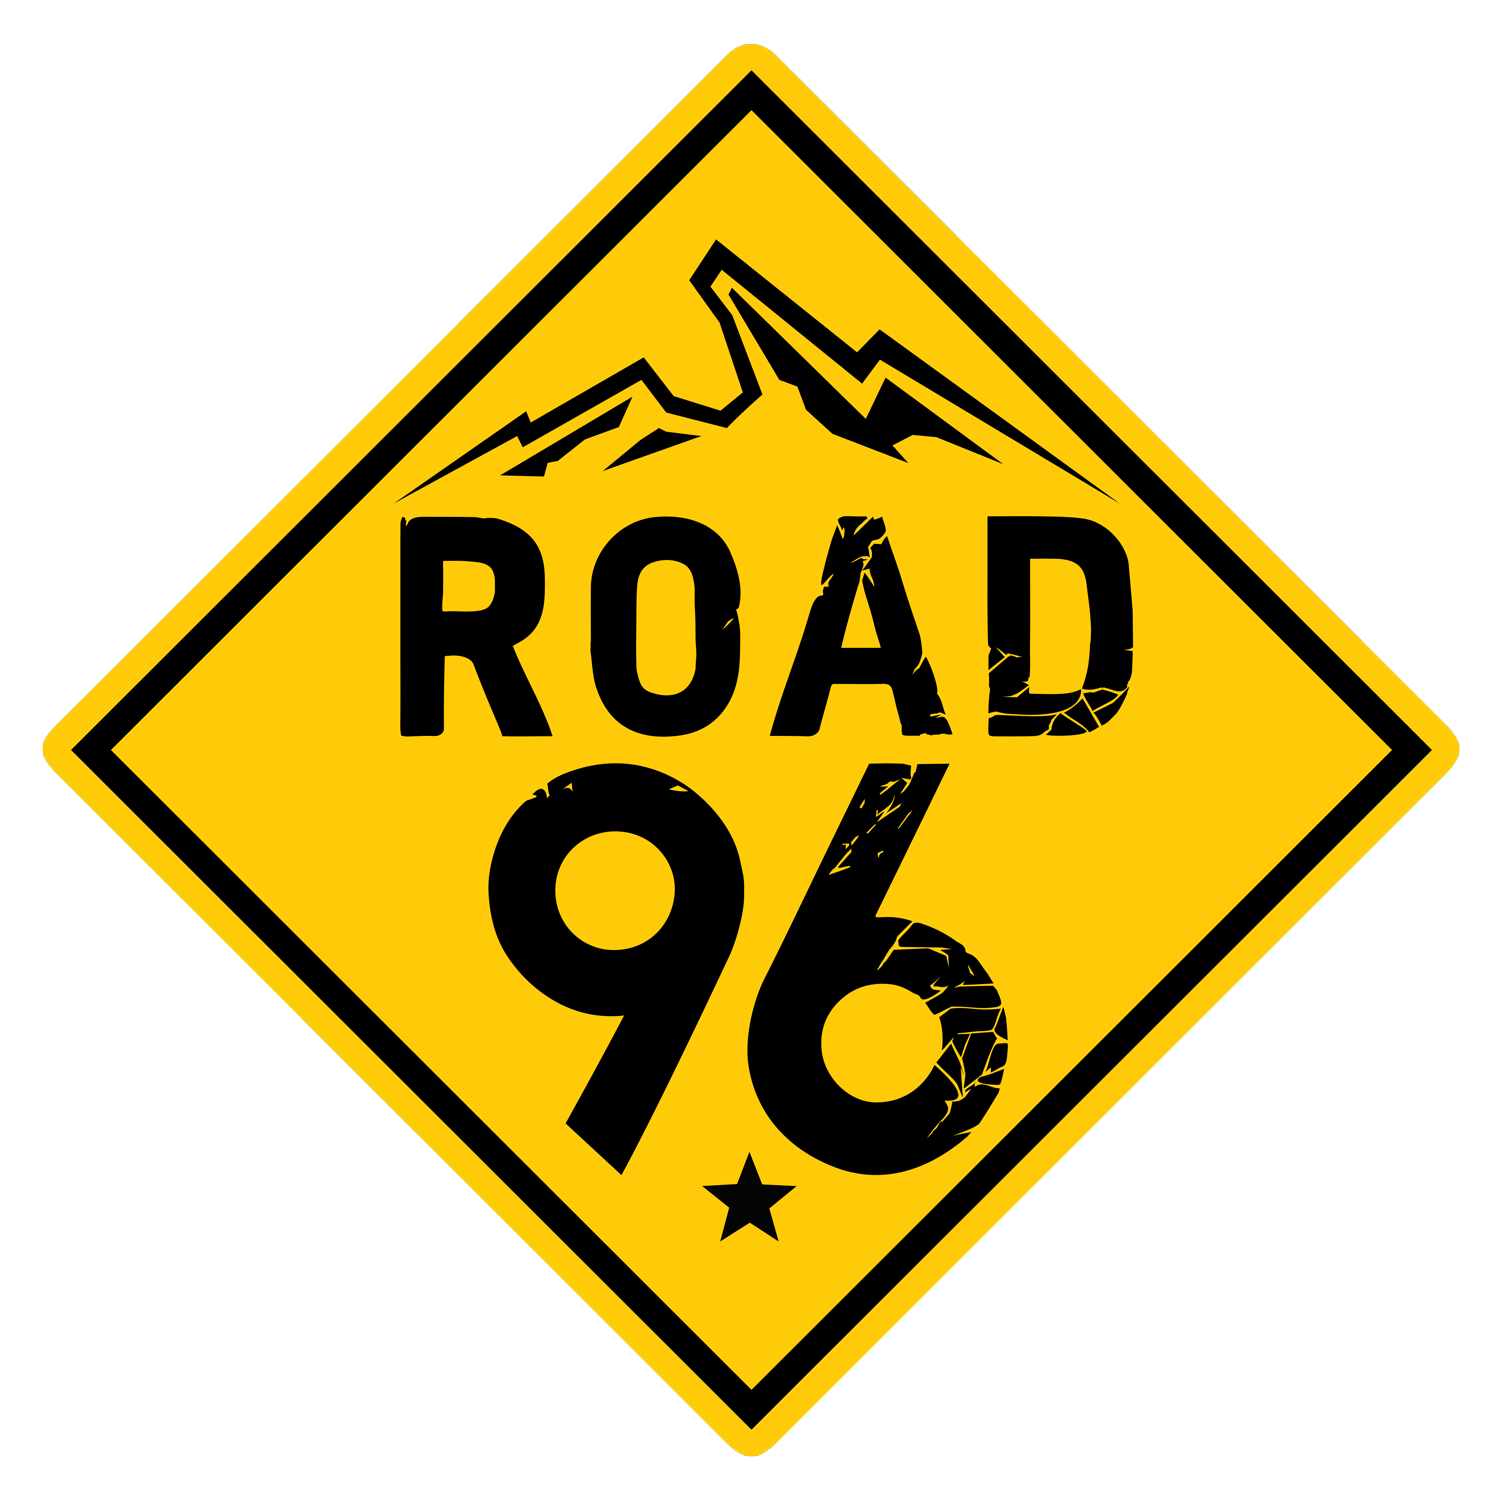 Road 96 Pfp